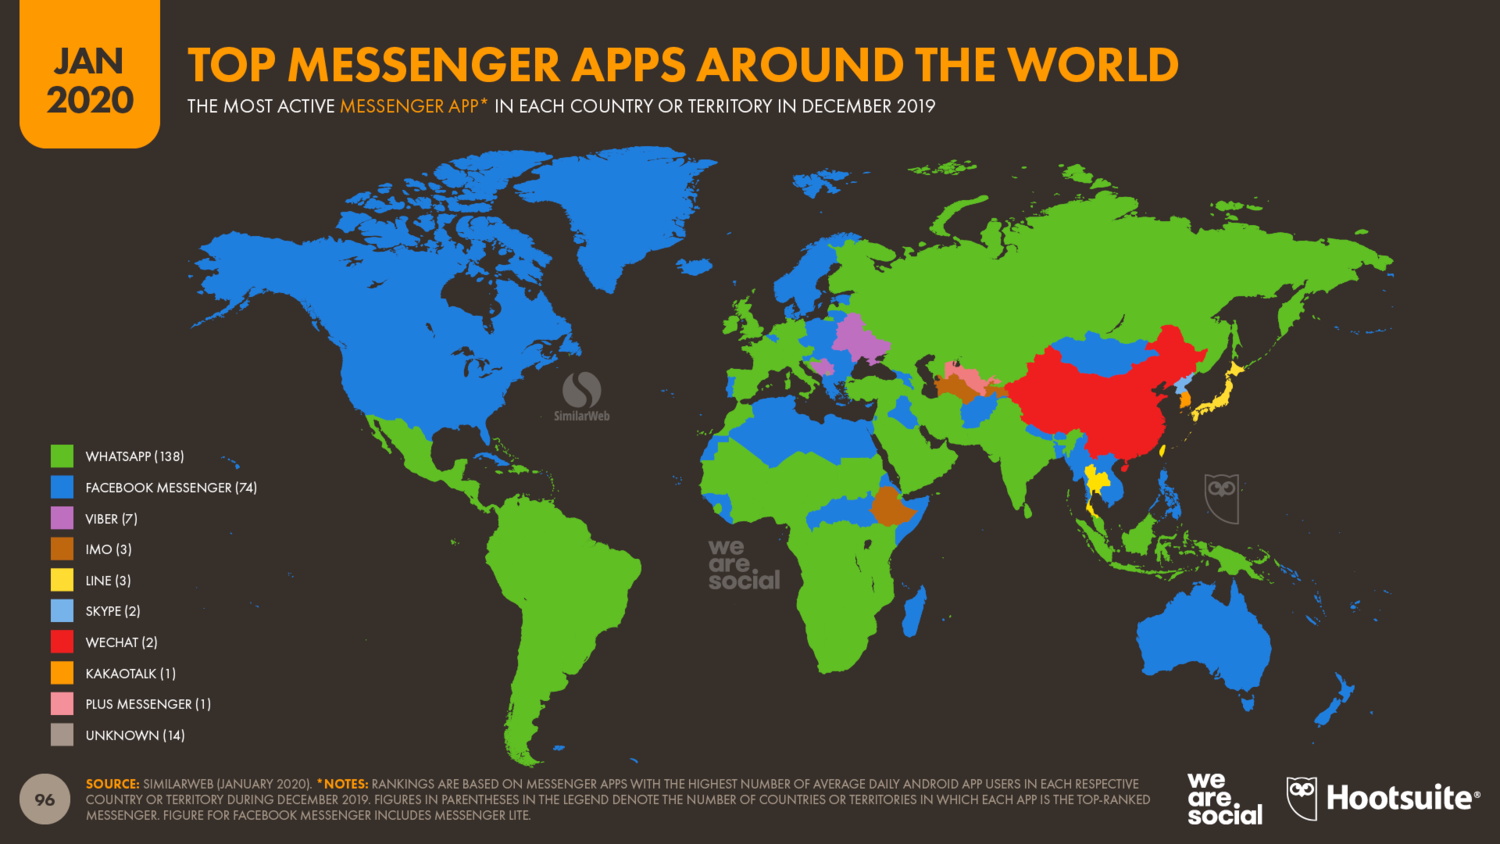 地图显示了世界各地最受欢迎的即时通讯软件。